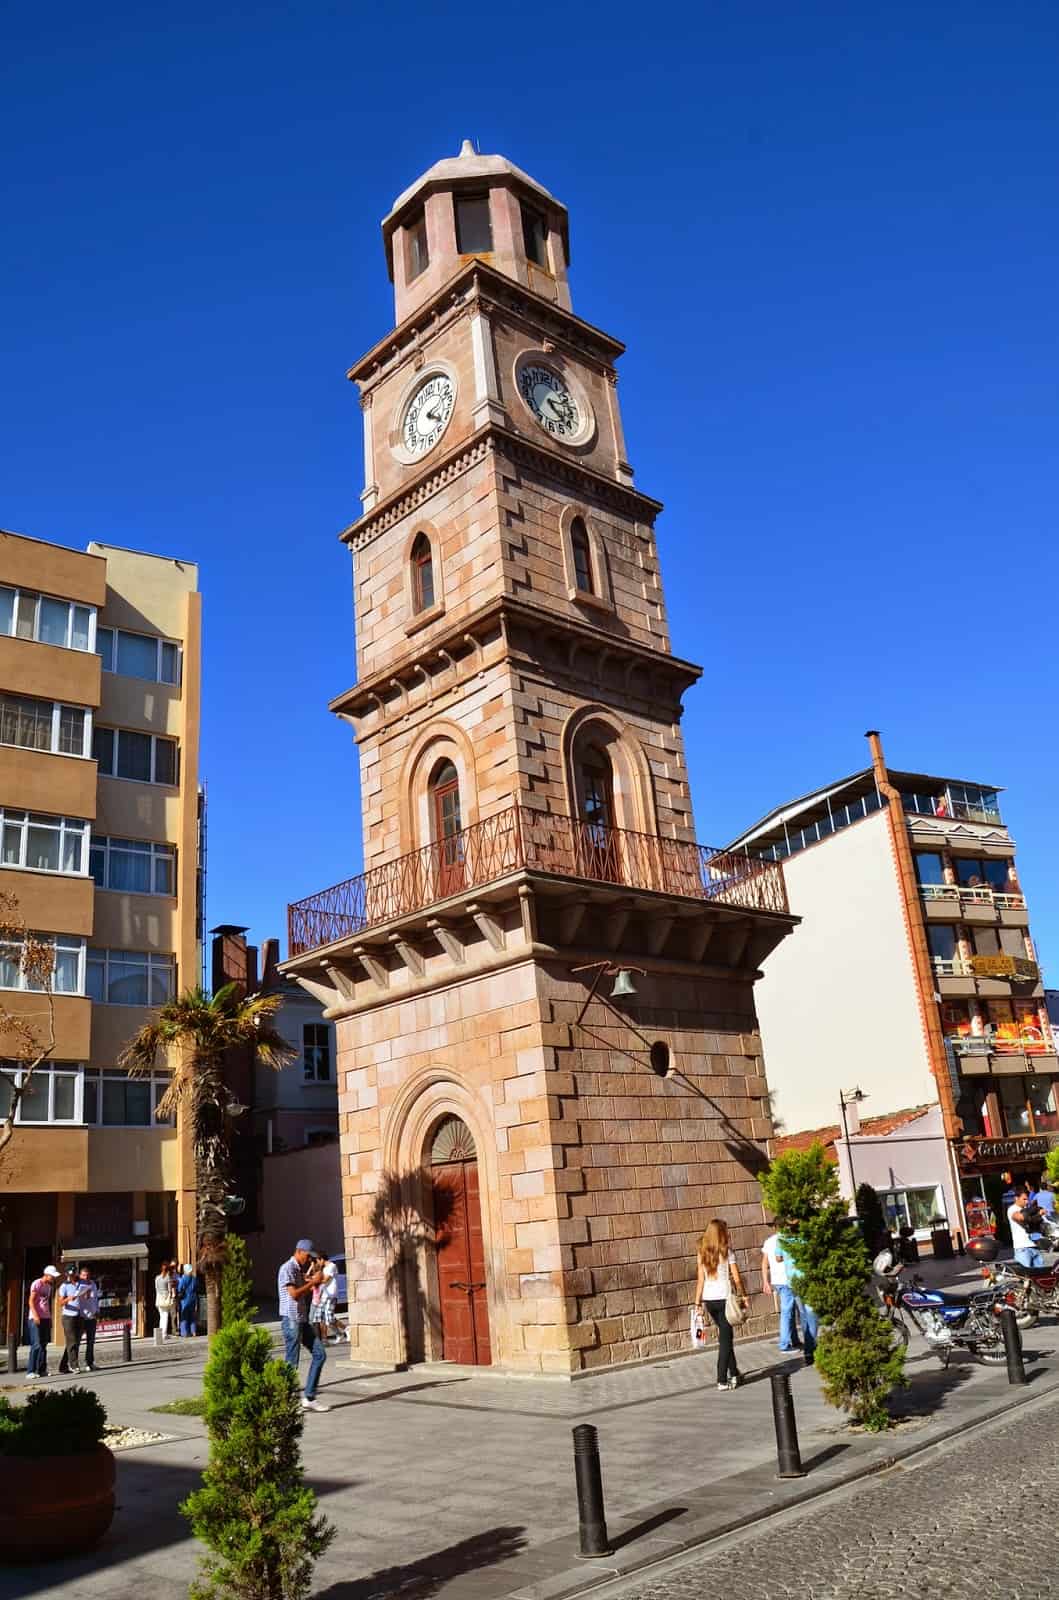 Çanakkale Clock Tower in Çanakkale, Turkey